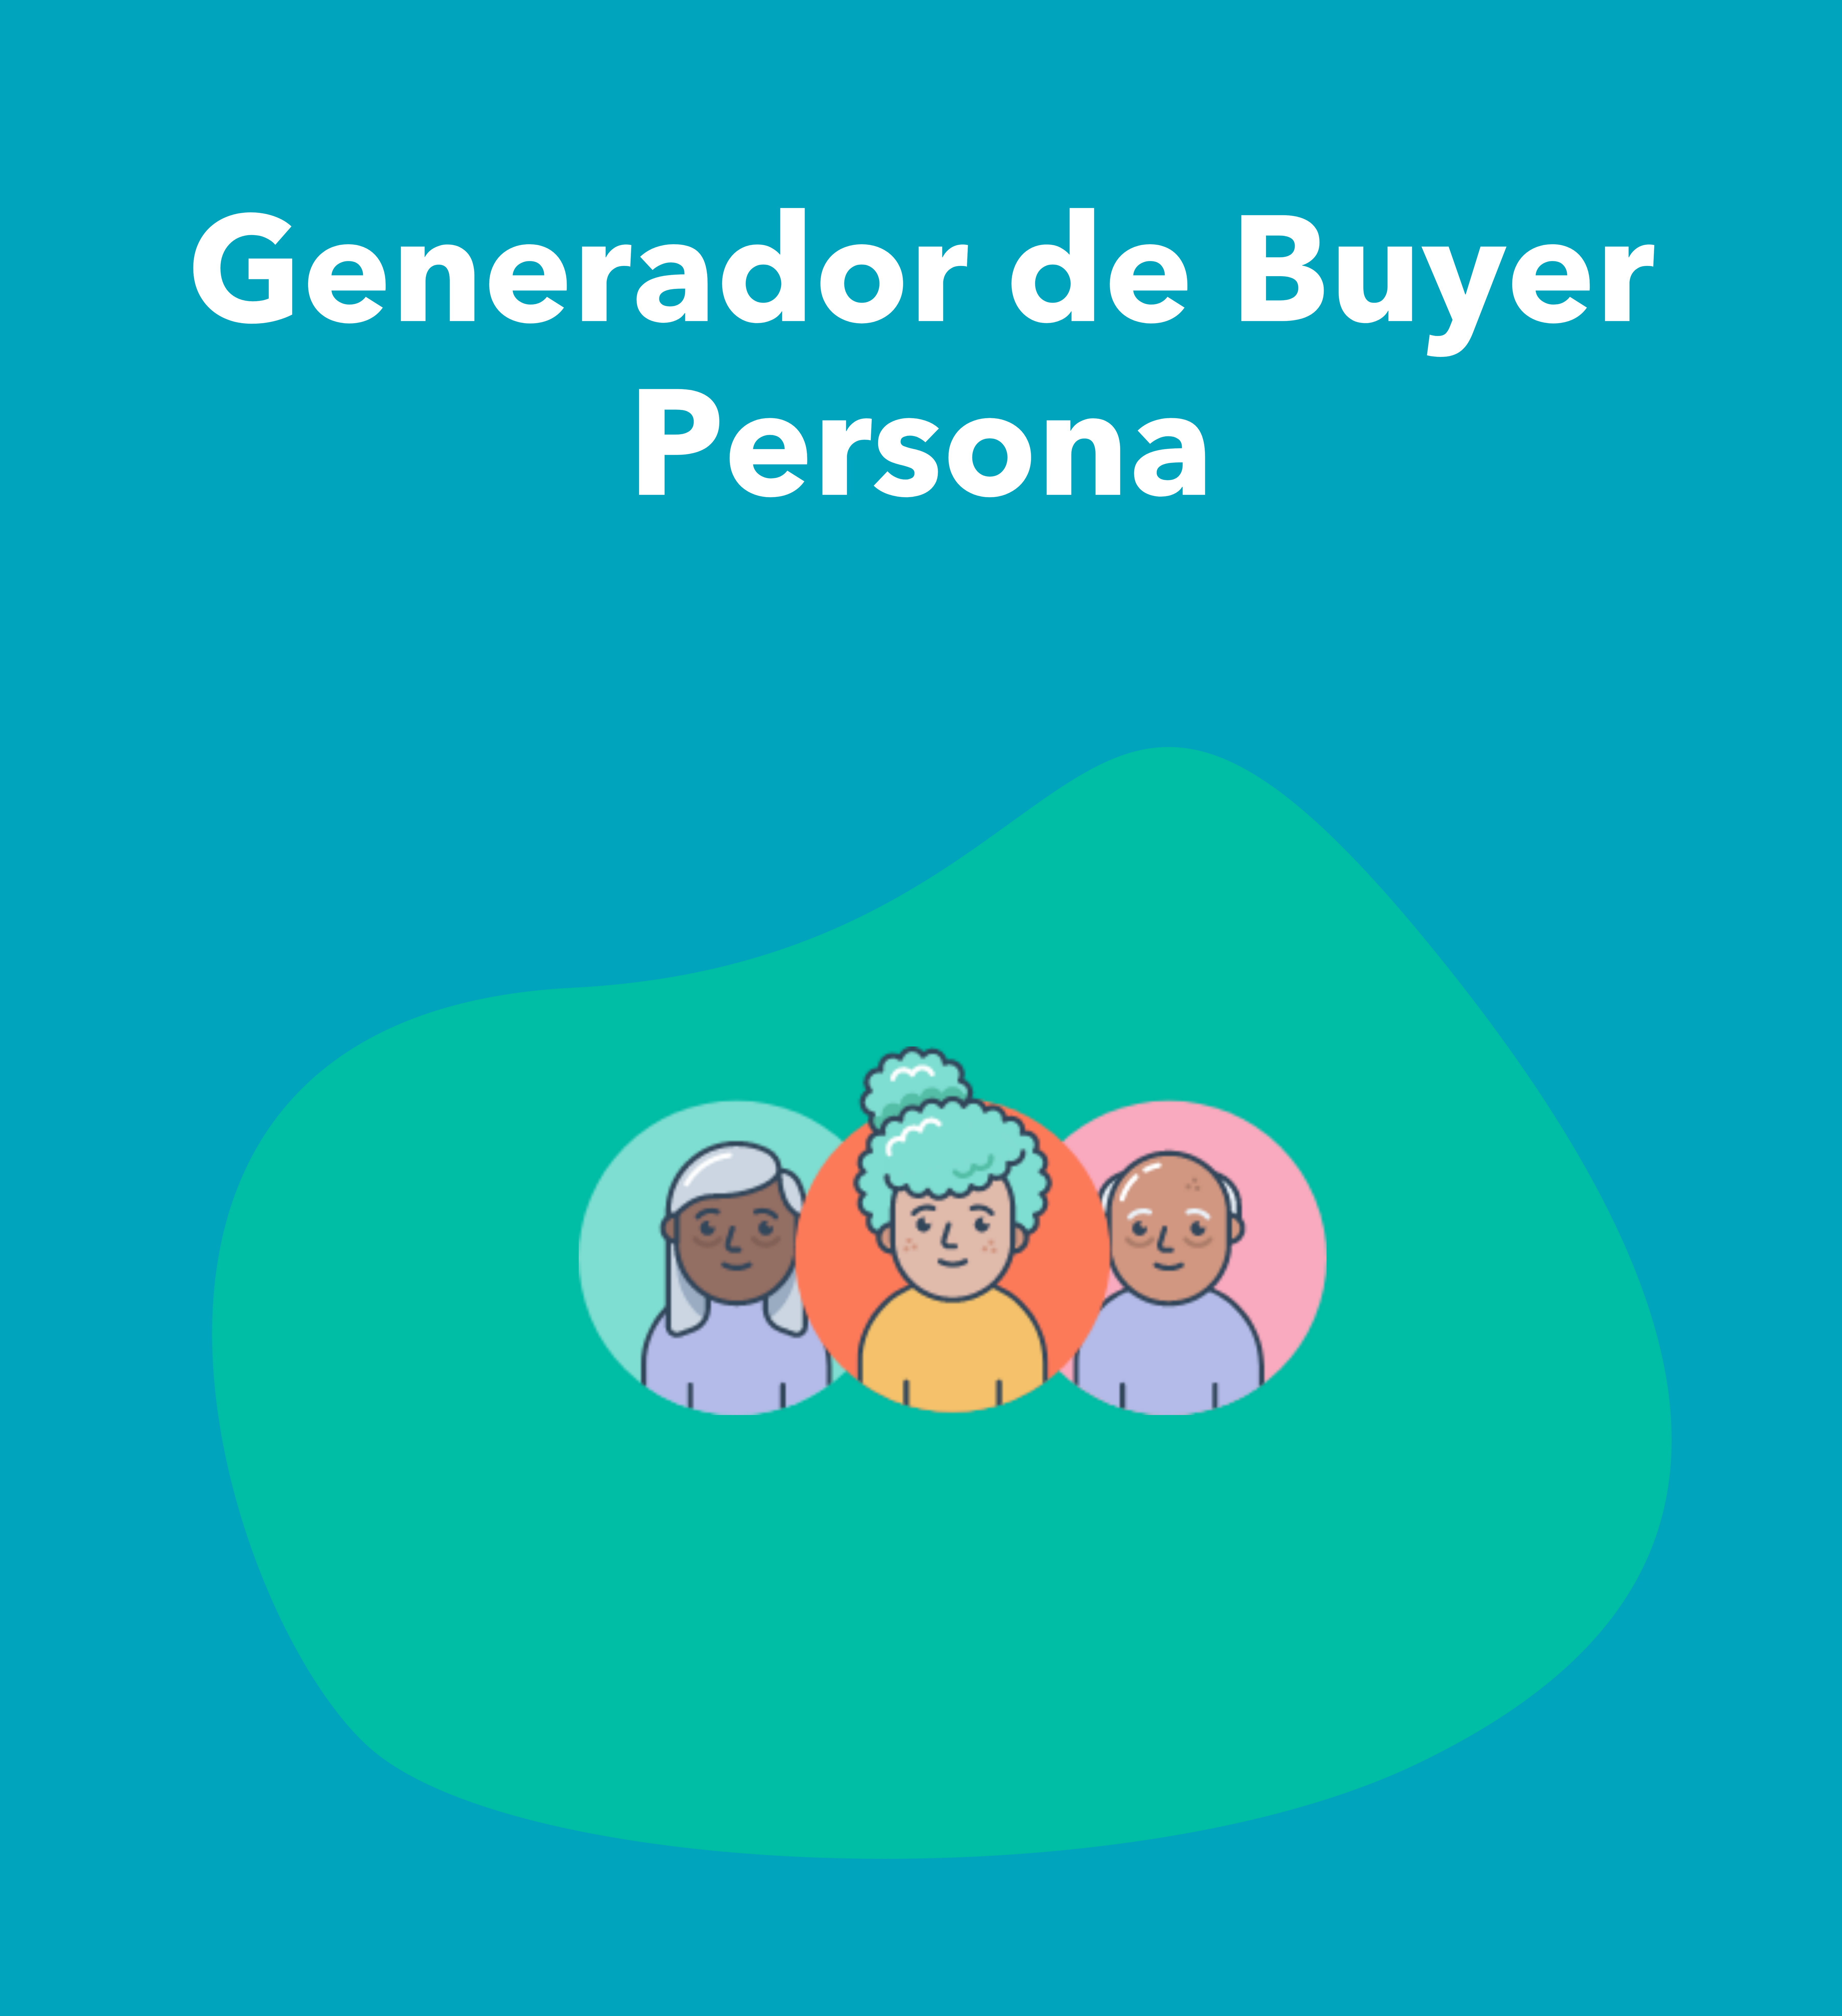 Generador de buyer persona